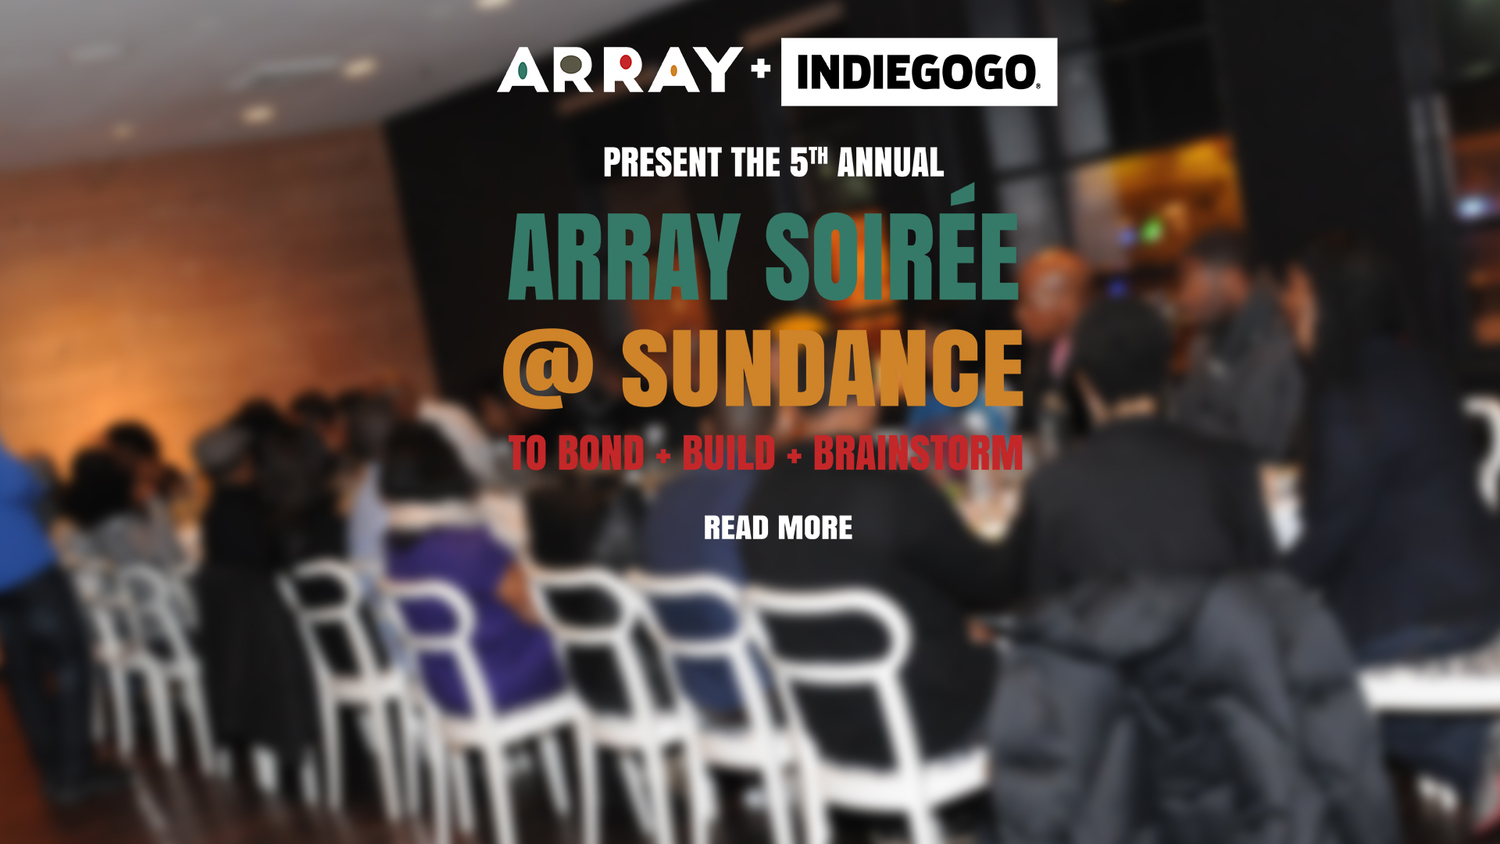 Array Indiegogo Sundance